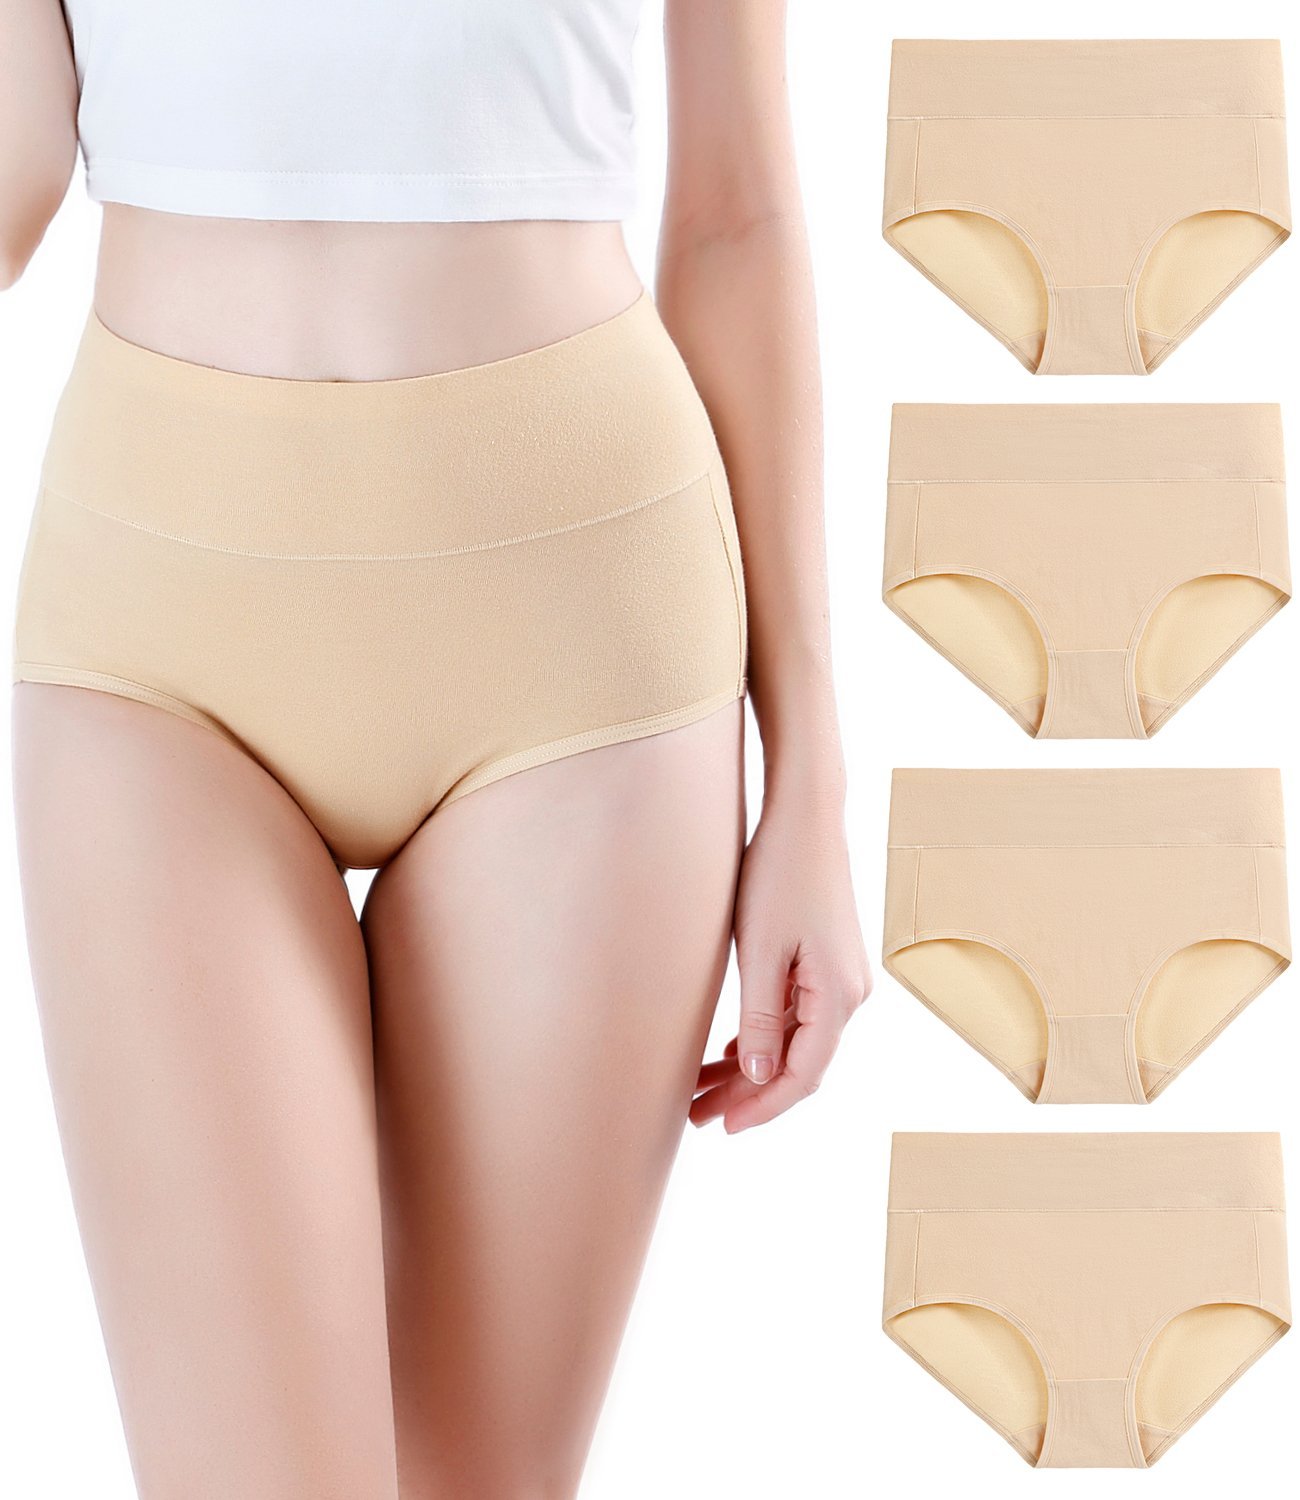 Buy Zivira Women's Micro Modal Panties Pack of 3 - Soft